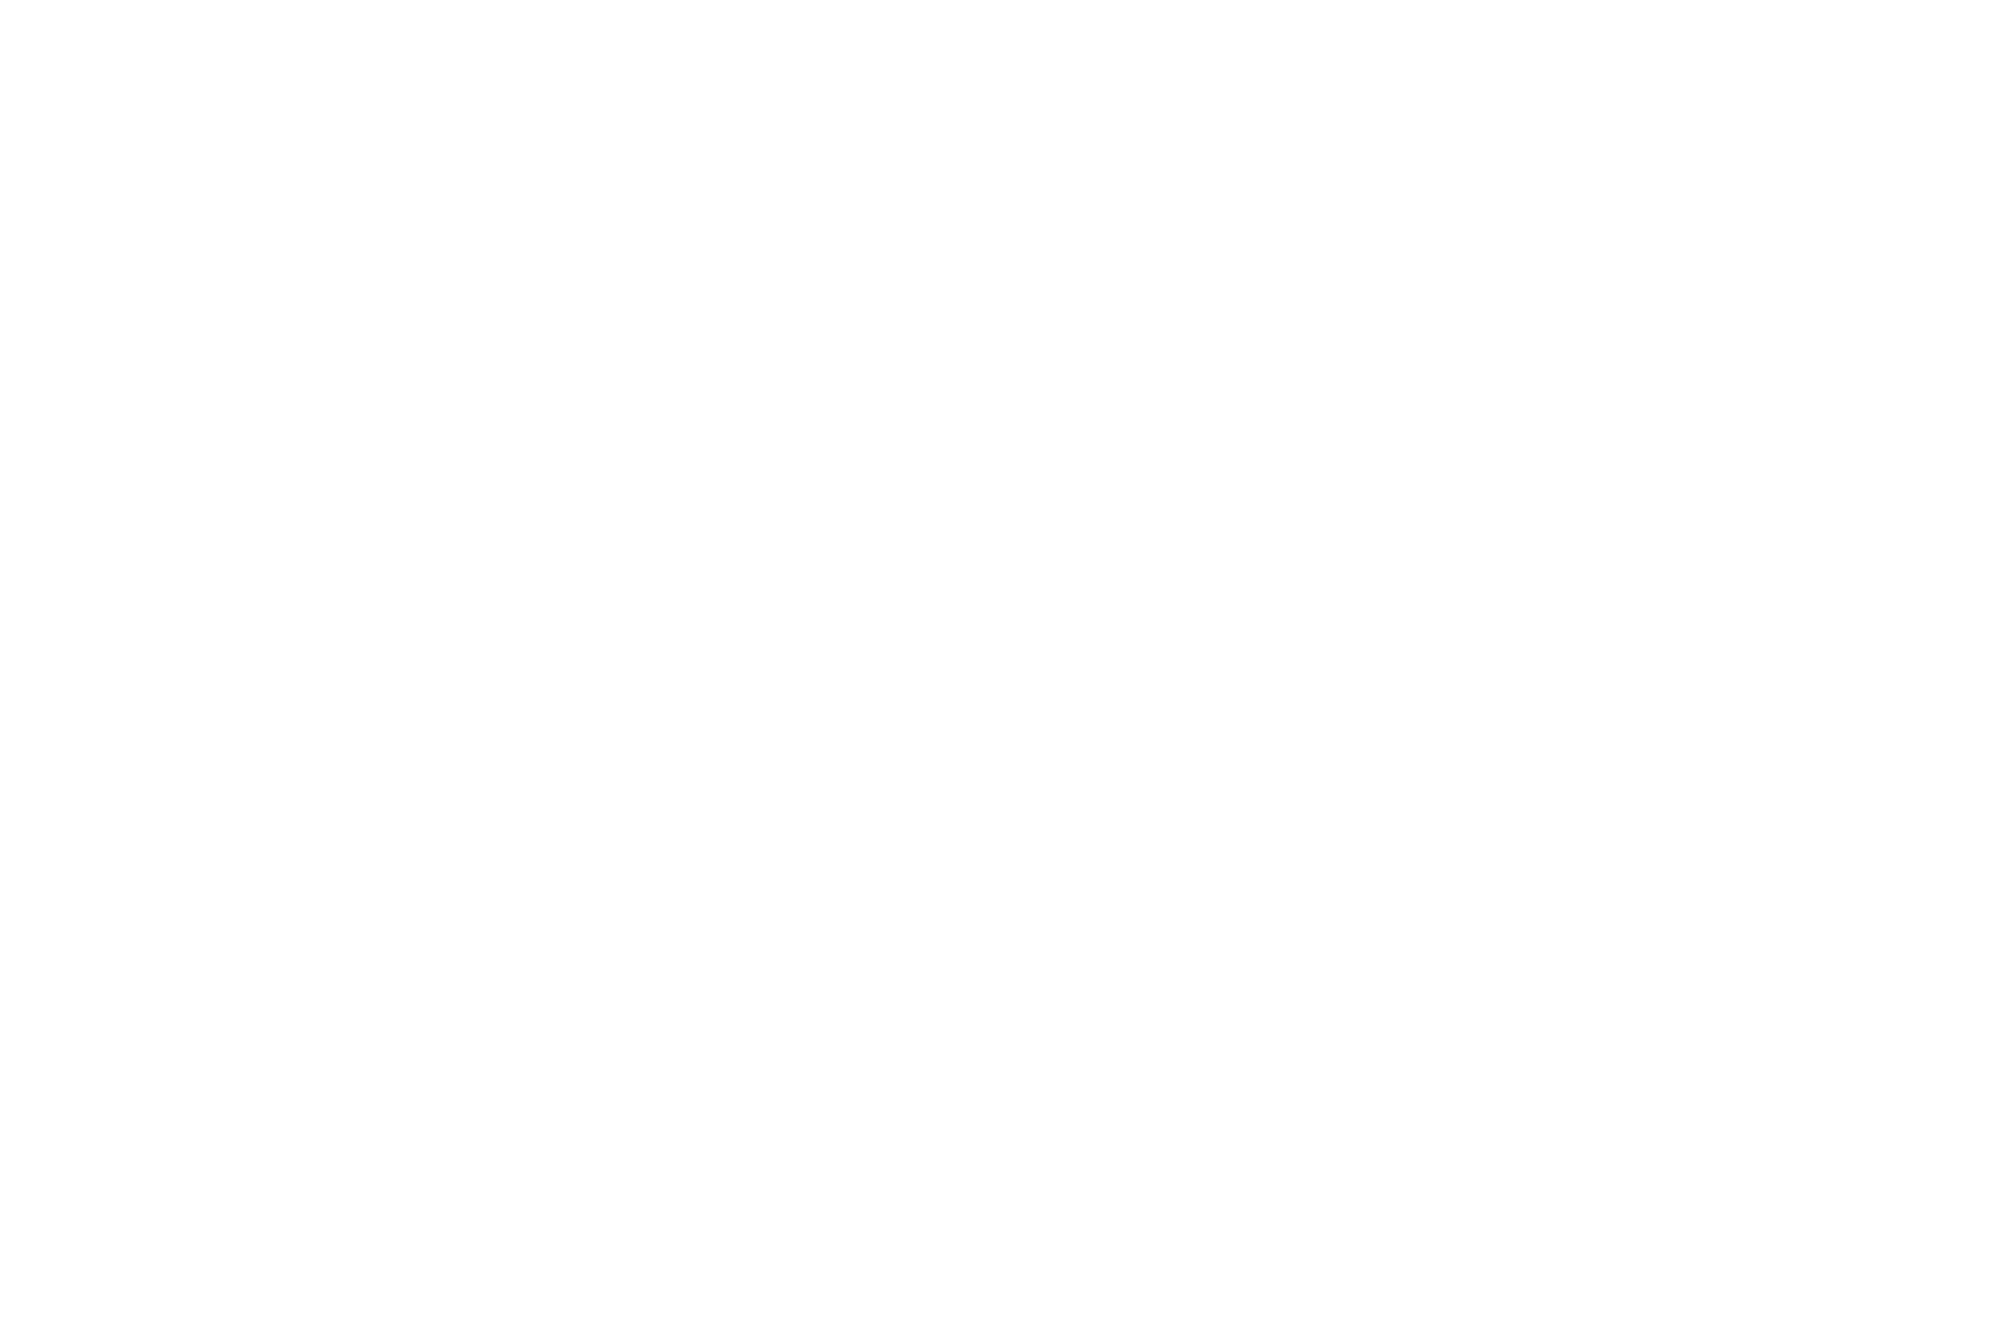 Fish 'R' Net: St. John Fisher University